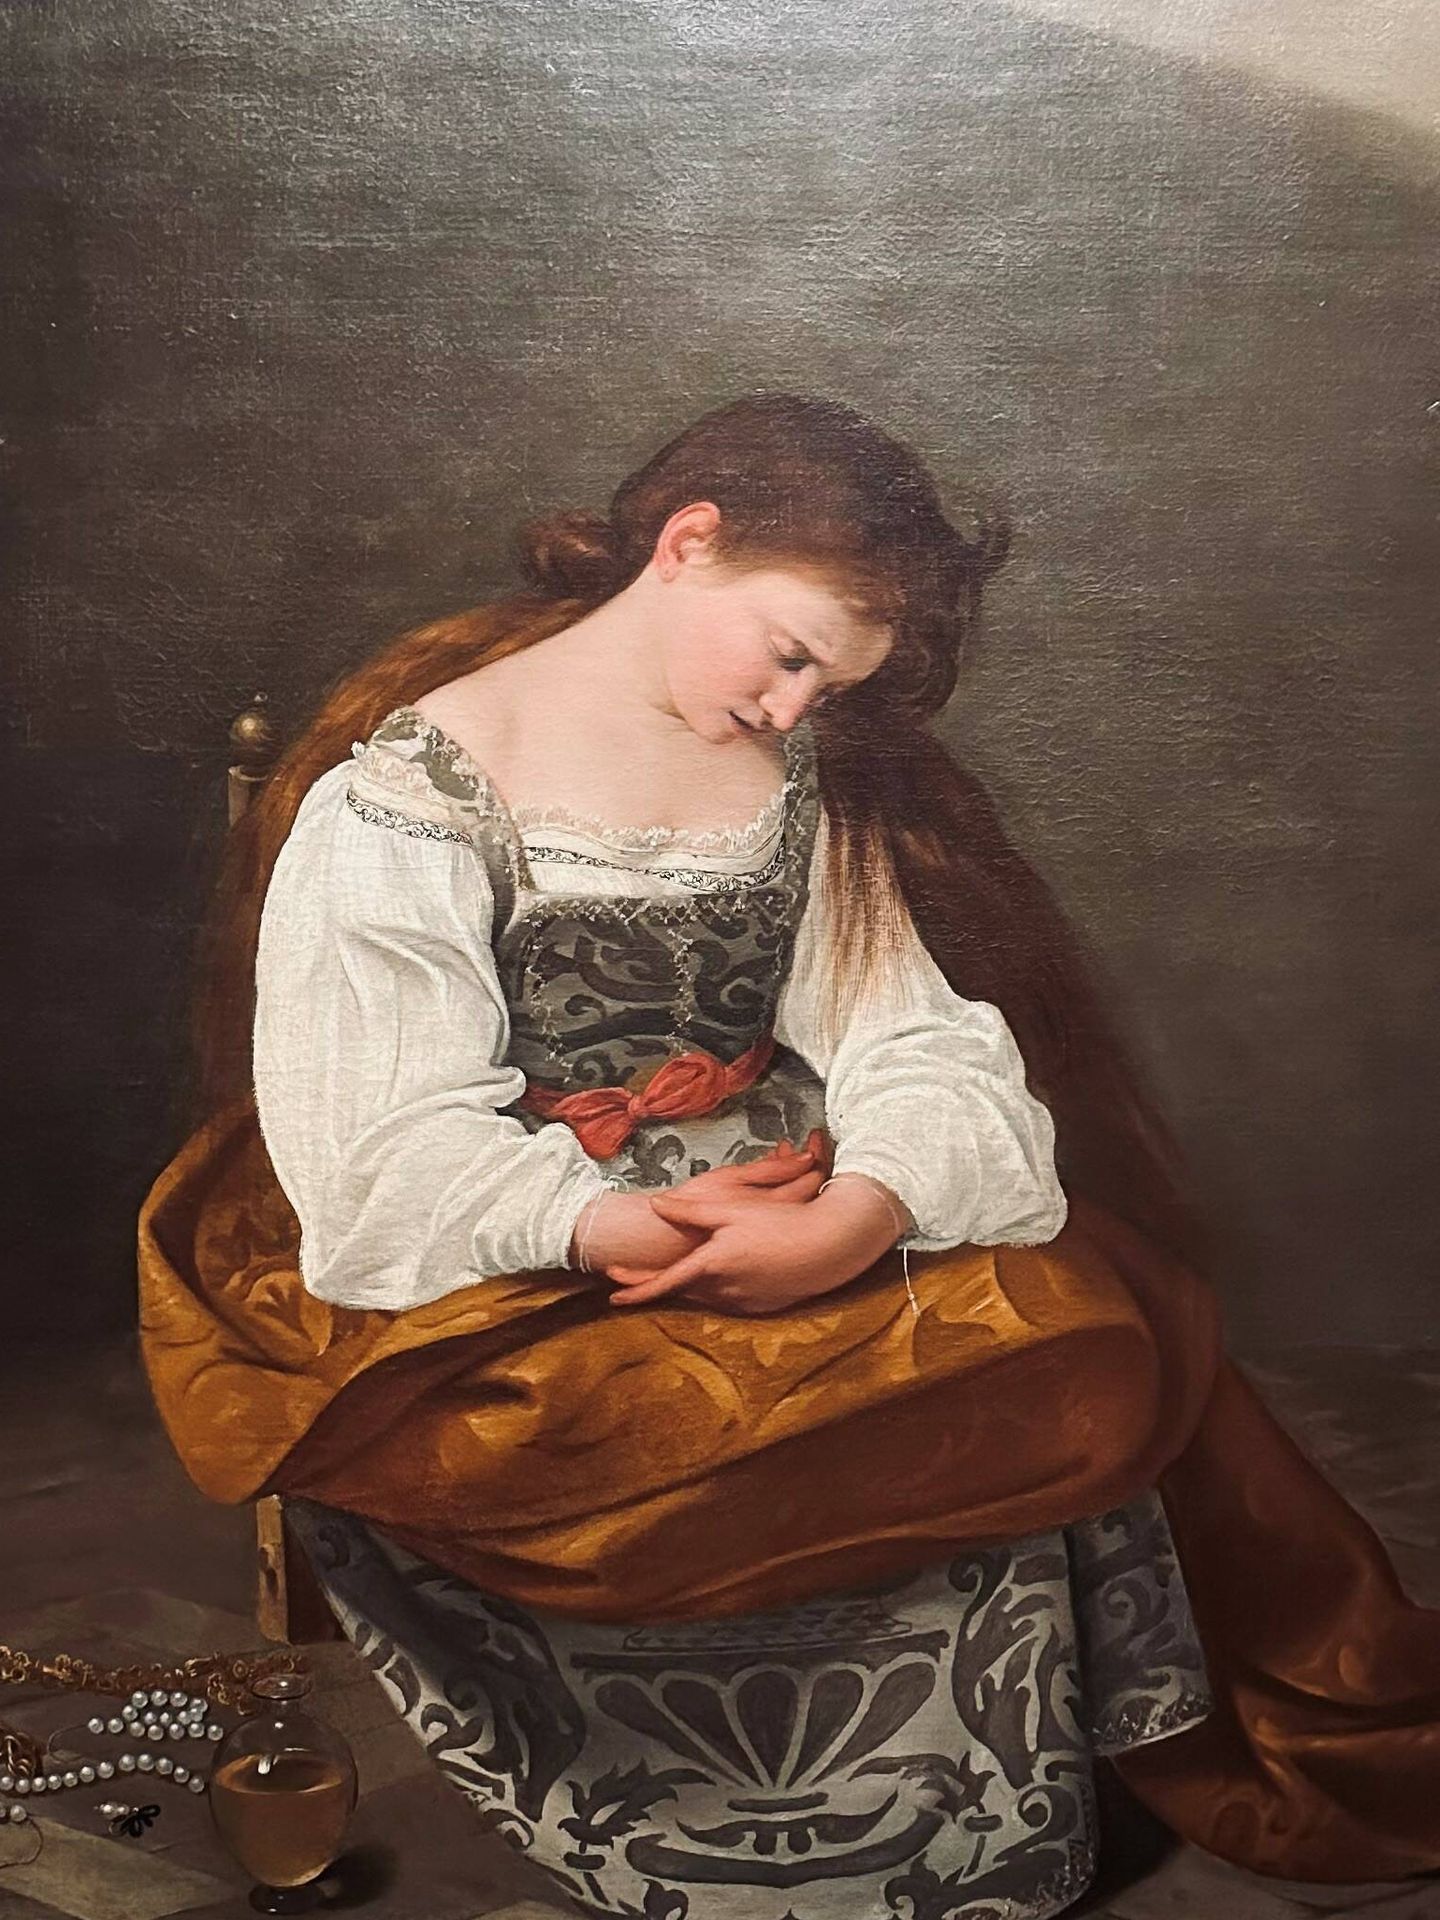 María Magdalena. Michelangelo Merisi, Caravaggio. 1594. Galeria Doria Pamphilj